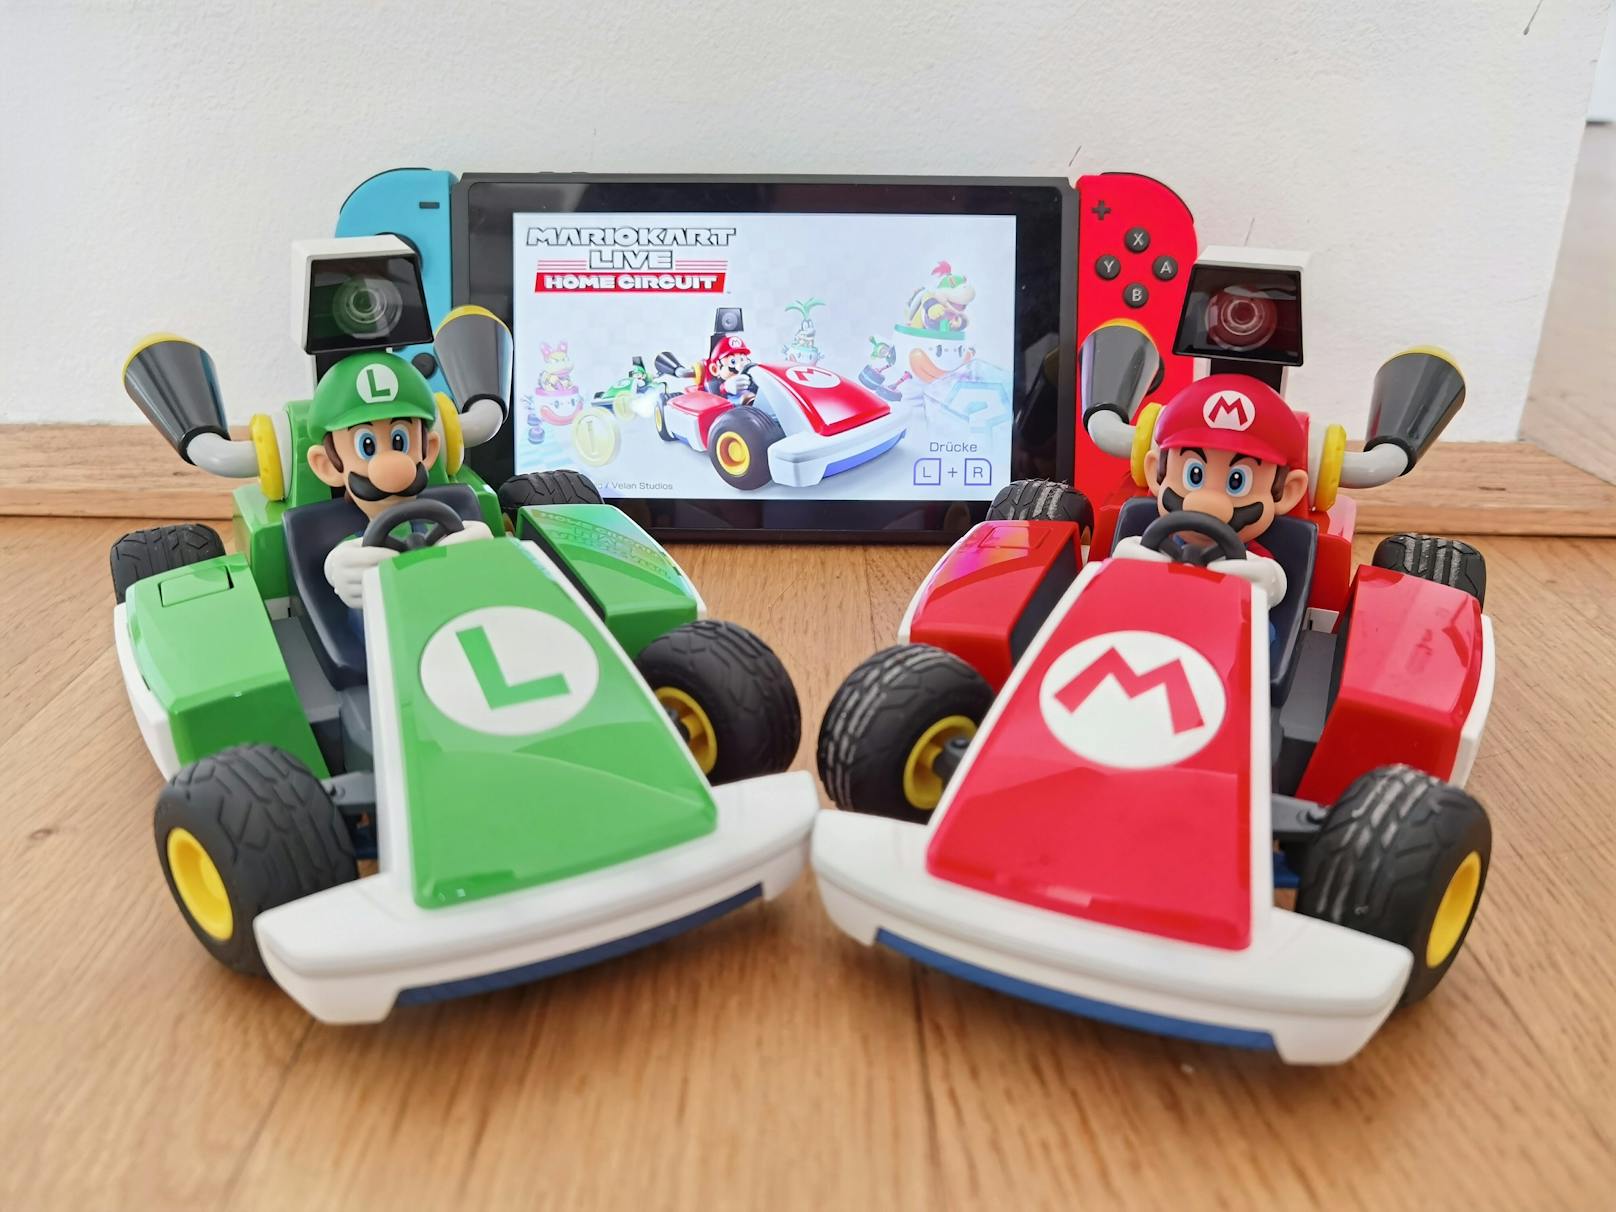 Was es dazu braucht: Eine Nintendo Switch und das neue Spiel “Mario Kart Live: Home Circuit”. Über den Startknopf an den Karts werden diese mit der Switch gekoppelt.